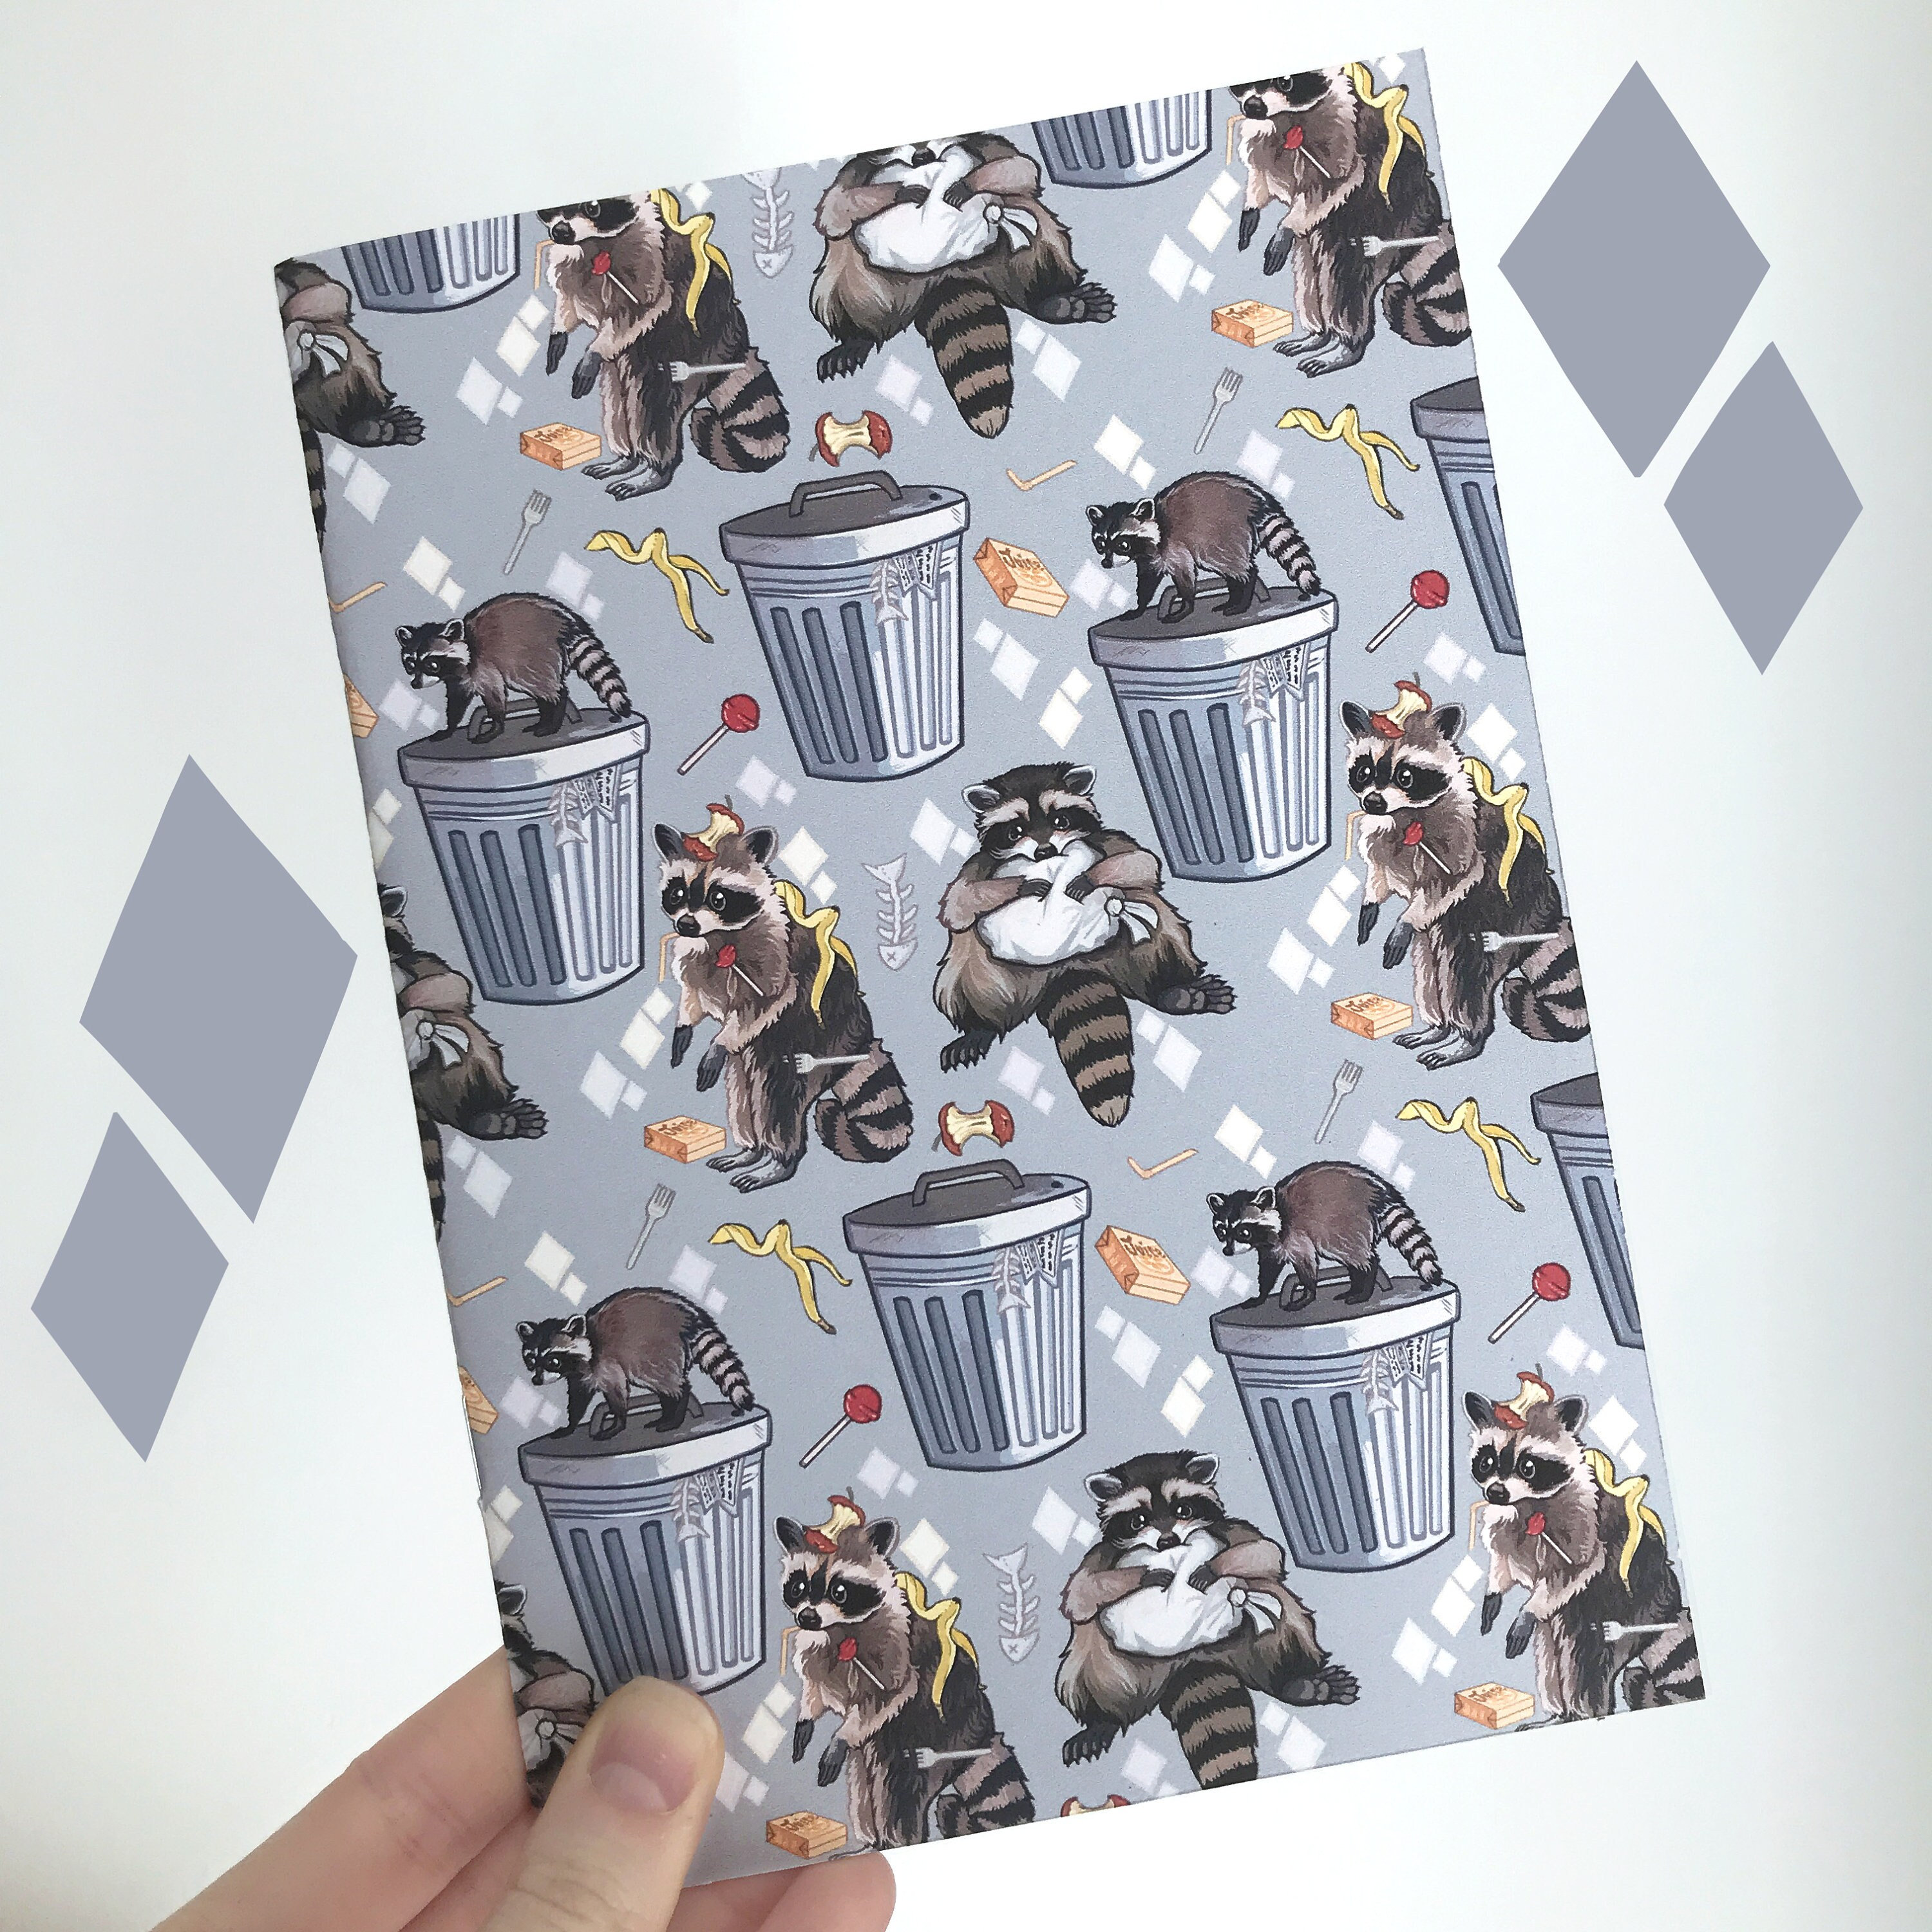 Sketchbook: Novelty Cute Panda Sketchbook Ramen Noodles Gift - Sketchbook  8.5x11 (Paperback)